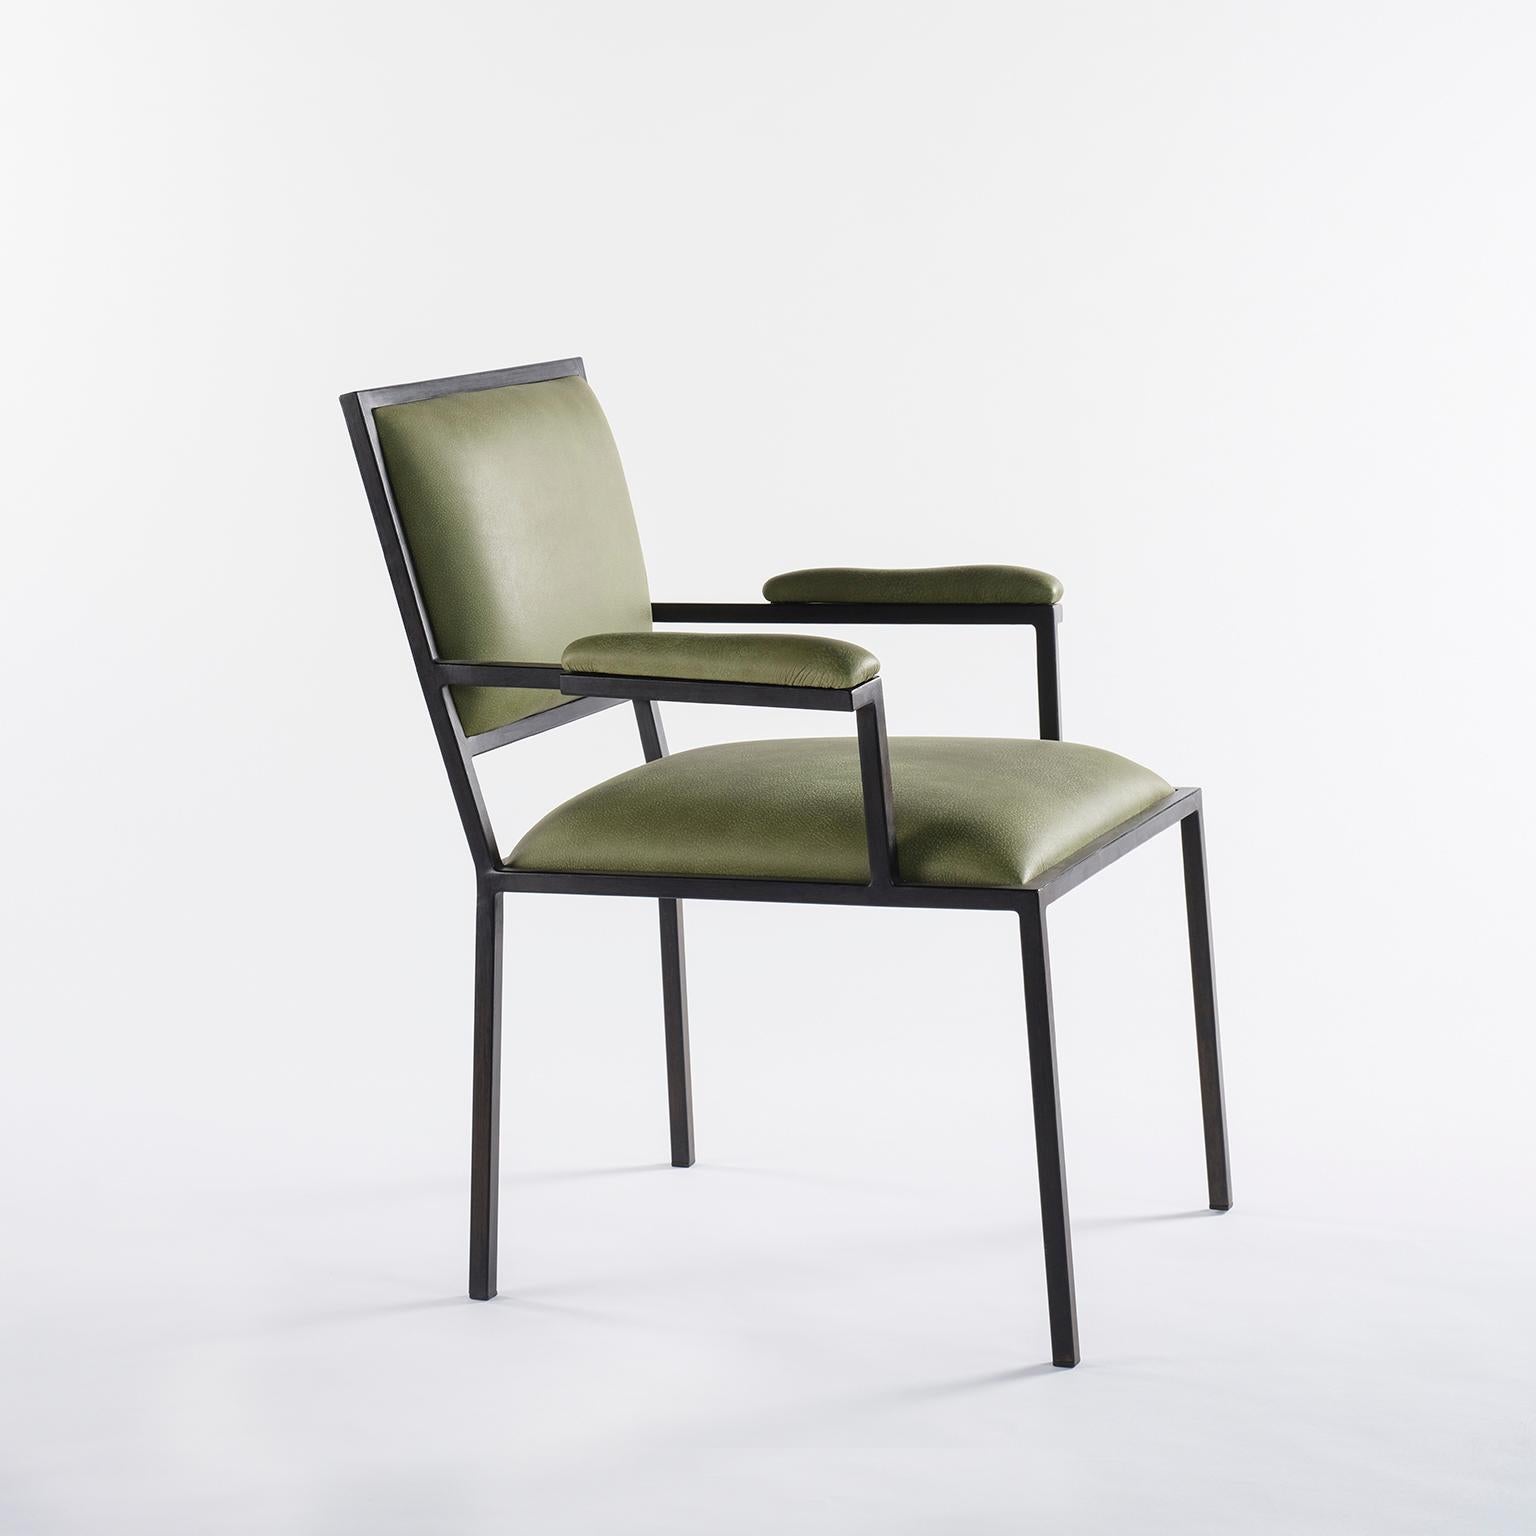 Conçu pour le restaurant Alle Scuderie, un fauteuil rembourré en cuir, dans un cadre linéaire simple.
Ce modèle léger est disponible dans une large gamme de cuirs italiens et se combine très bien avec les intérieurs classiques et modernes.